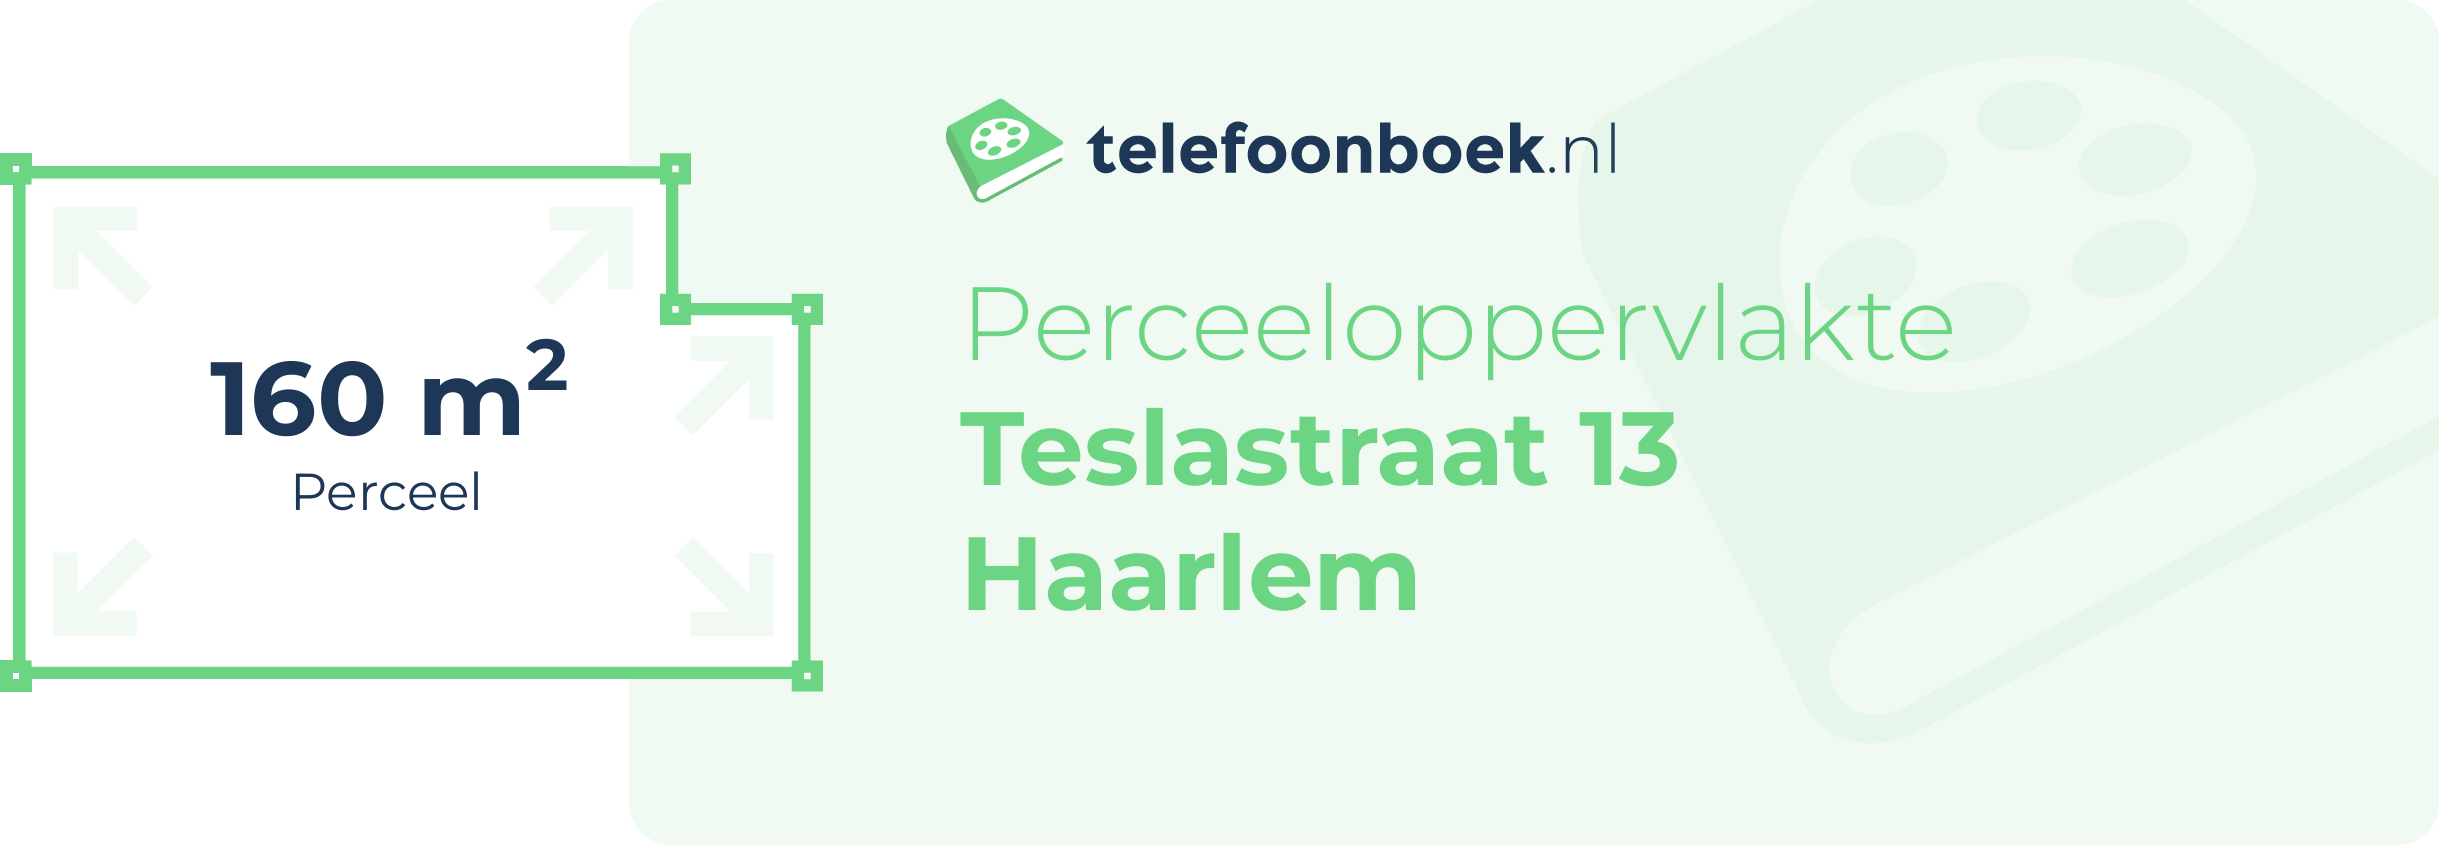 Perceeloppervlakte Teslastraat 13 Haarlem